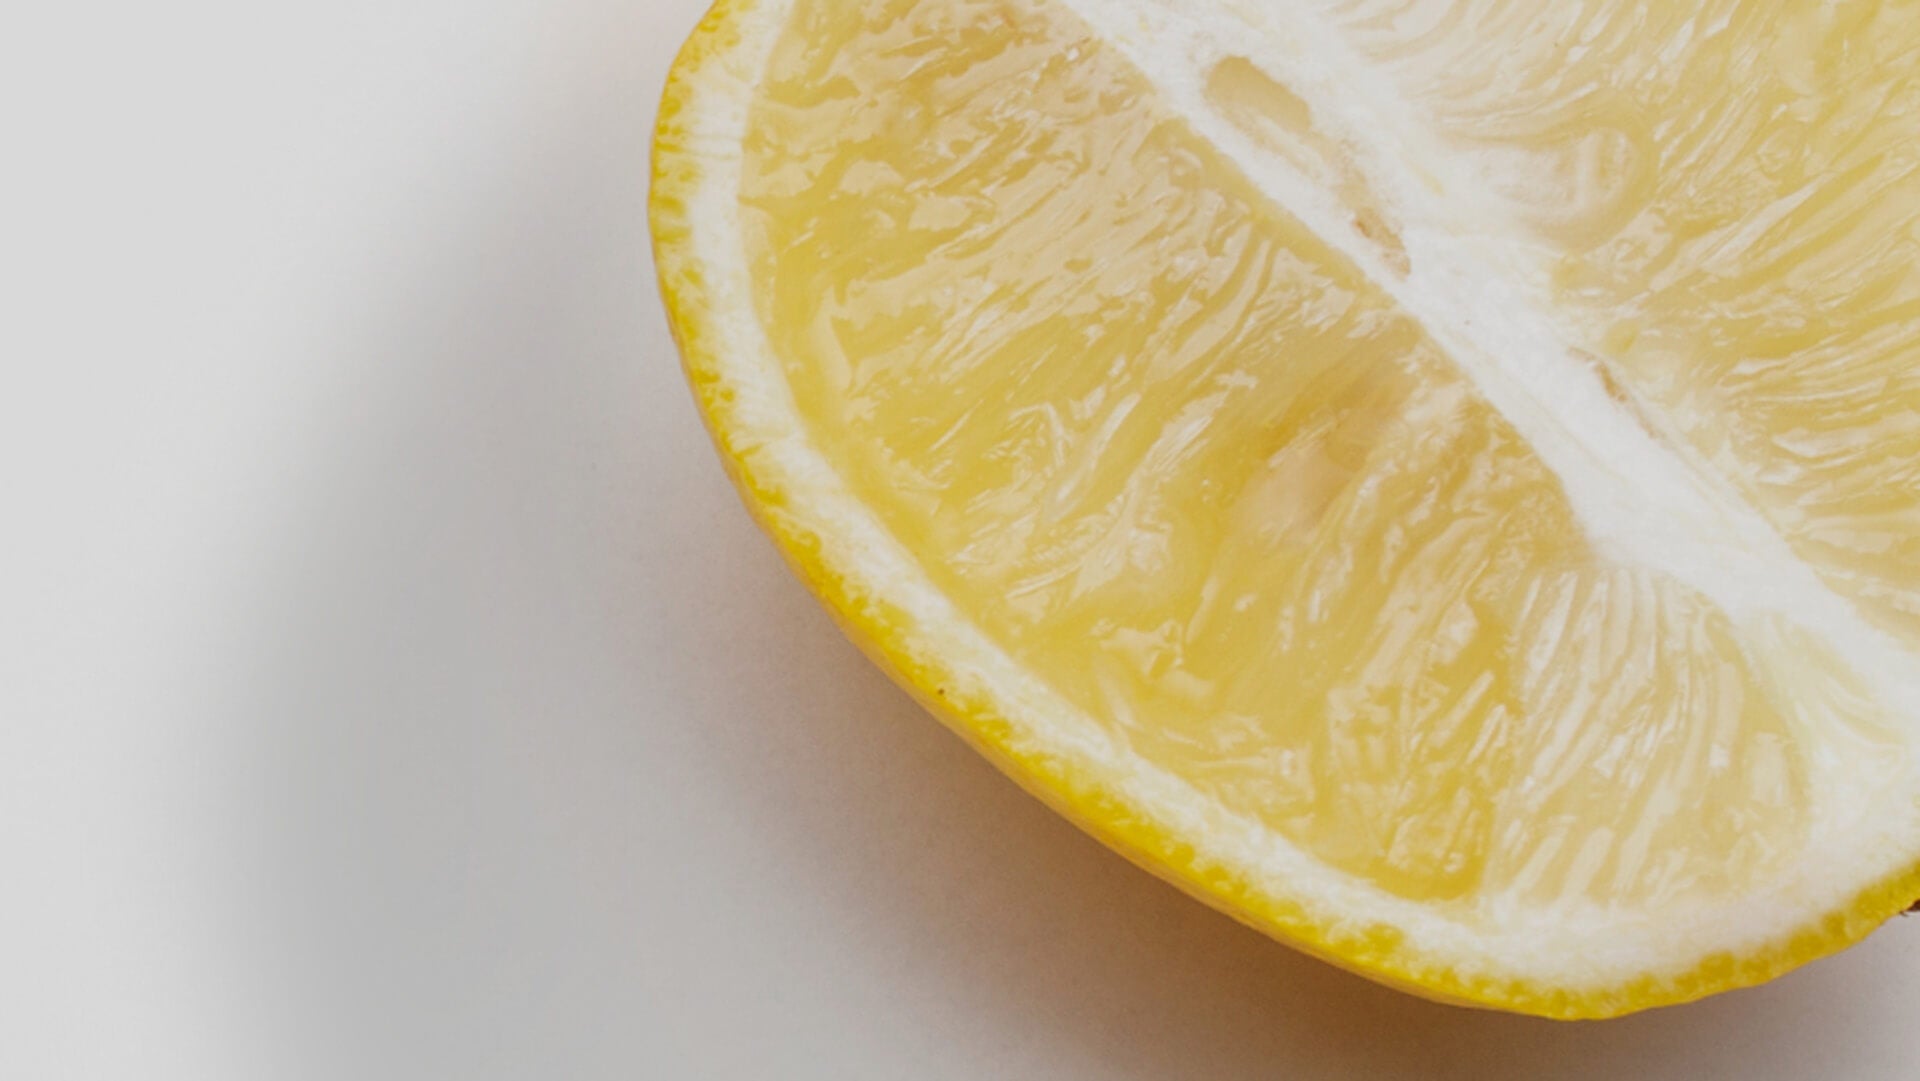 óleo essencial de limão, antioxidante, orgânico